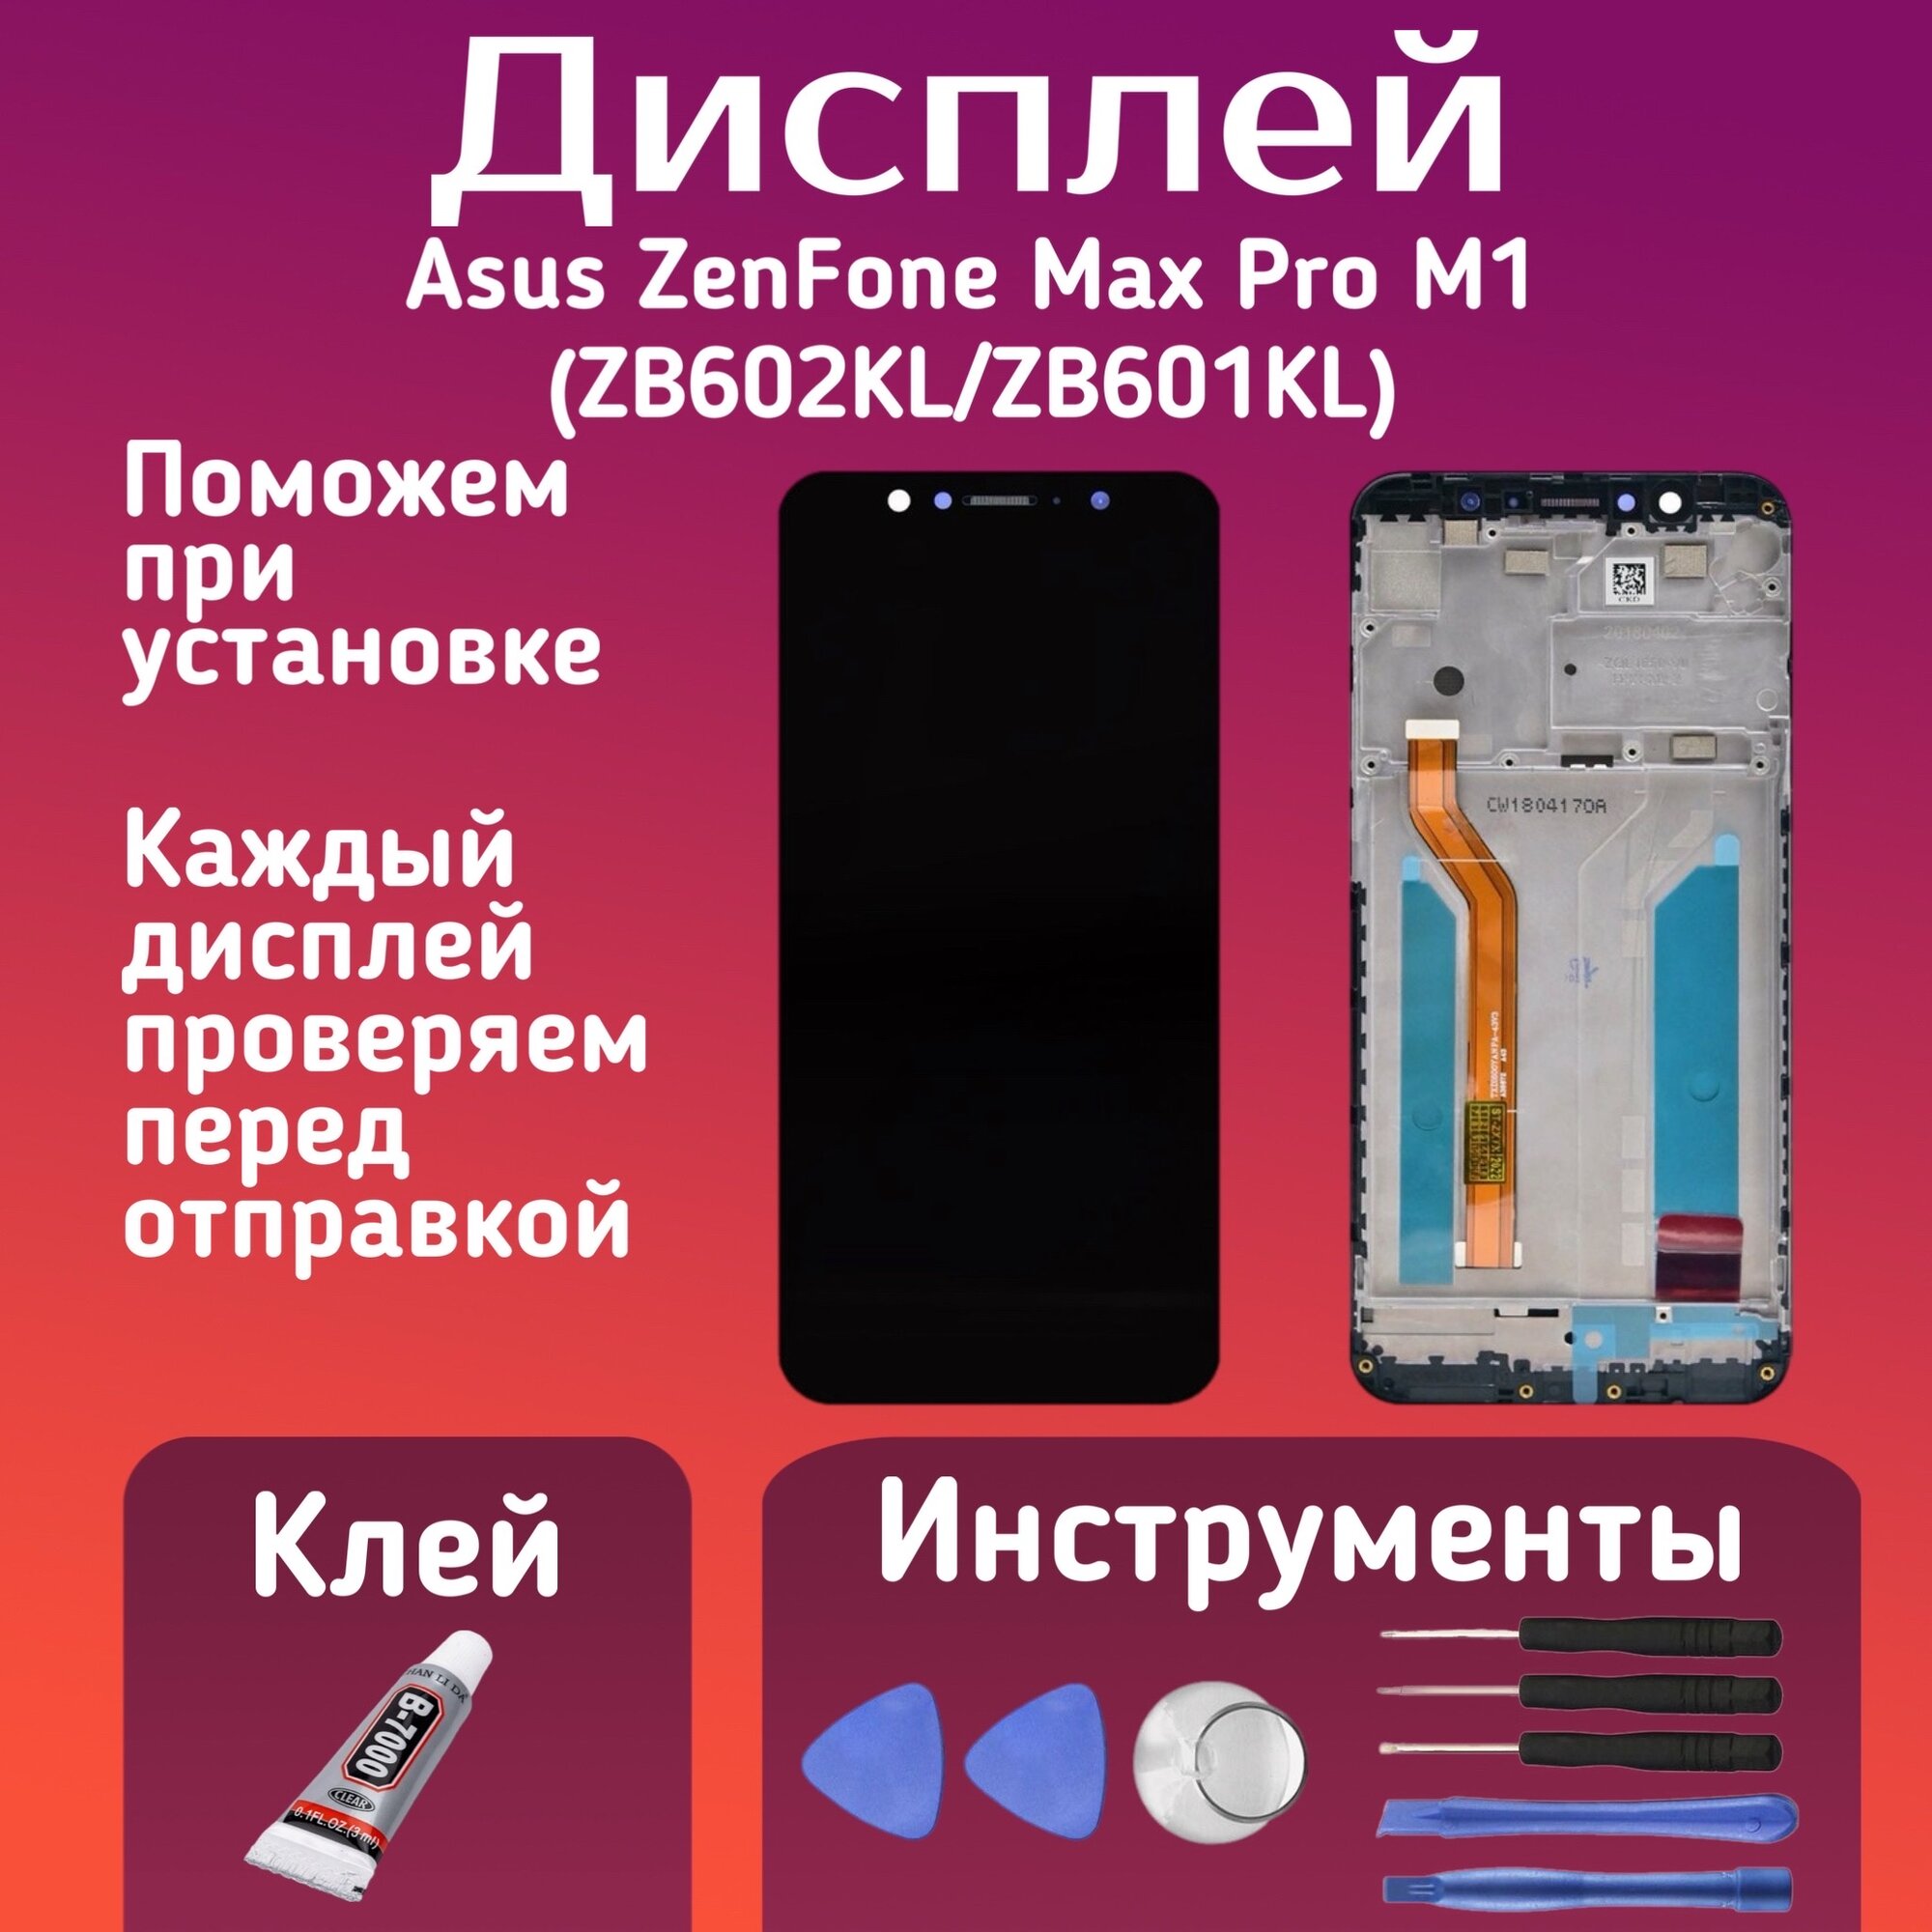 Дисплей для Asus ZenFone Max Pro M1 (ZB602KL/ZB601KL) комплект для установки, в сборе с тачскрином